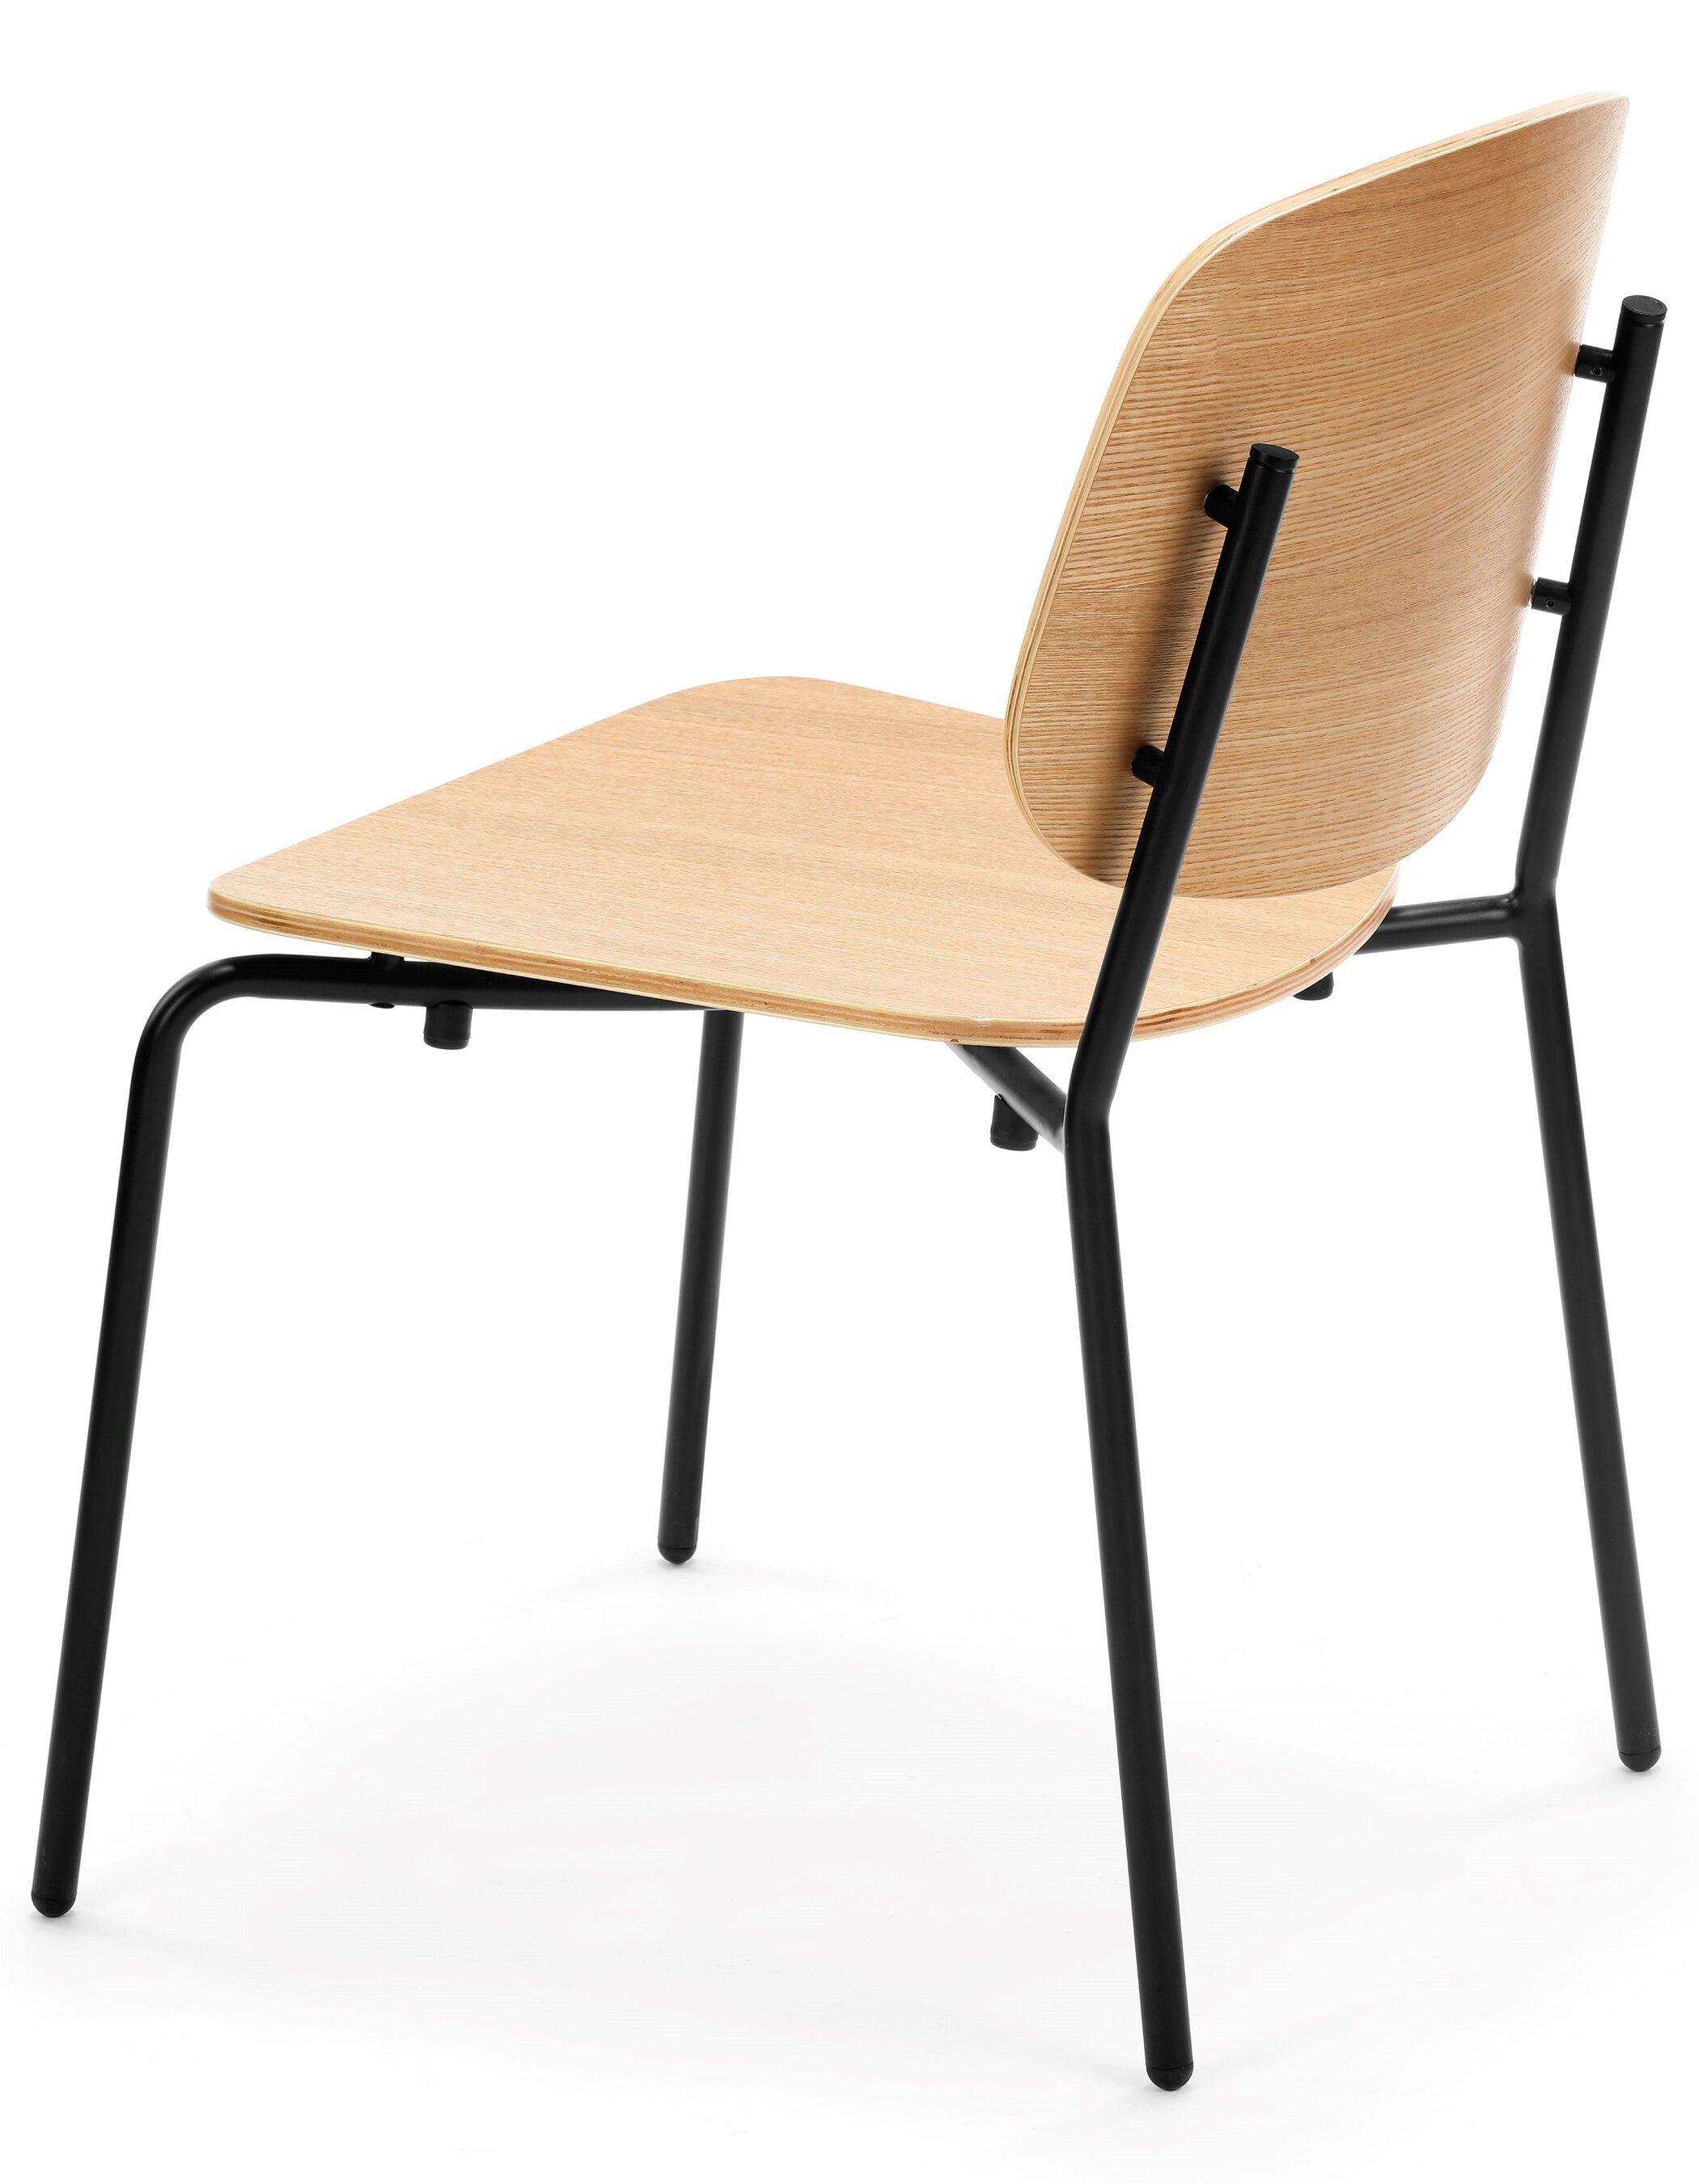 WS - Platform chair - Natural ash (Back angle)